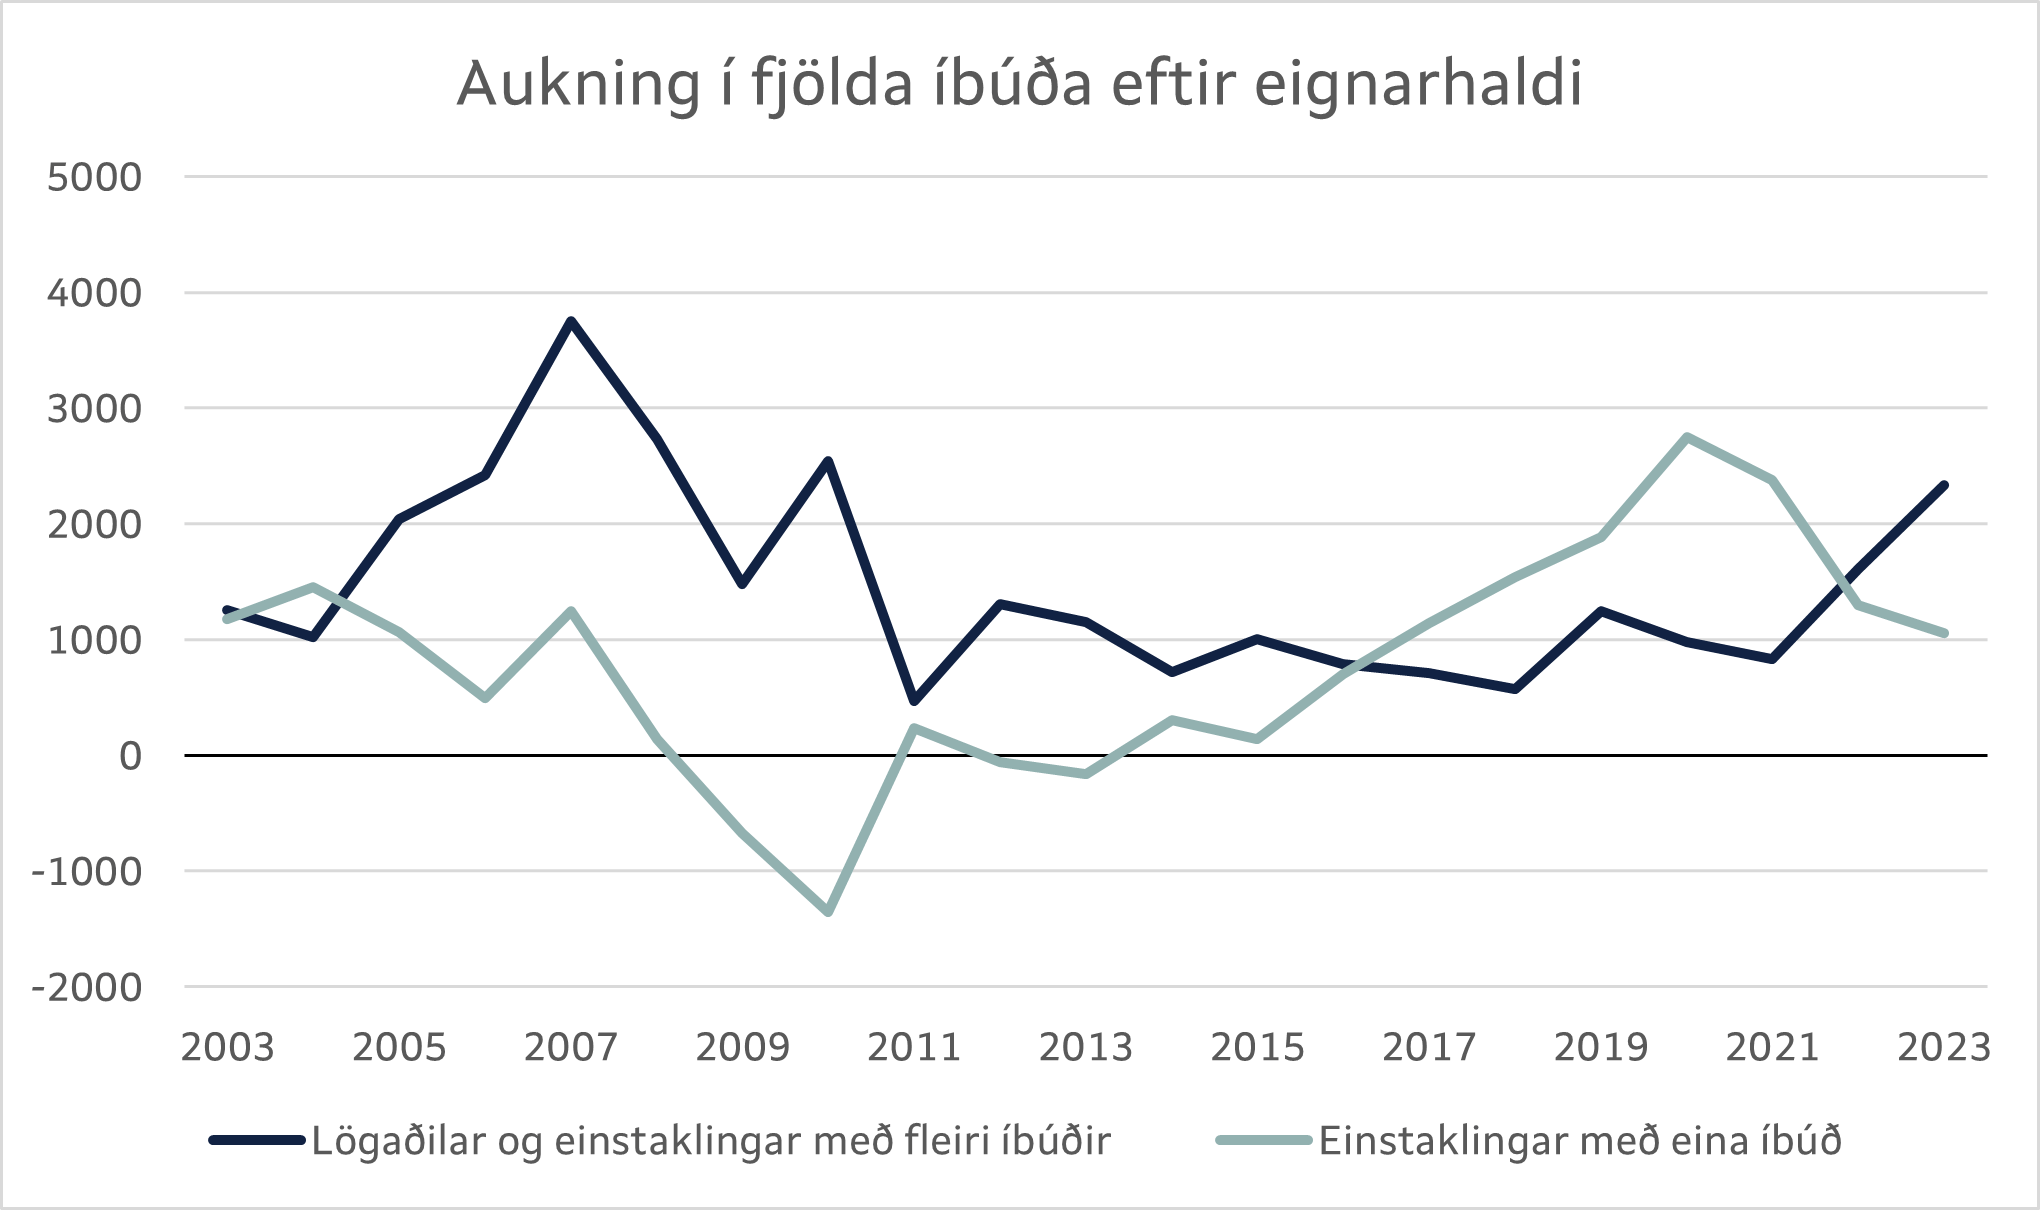 Aukning í fjölda íbúða eftir eignarhaldi 2003-2023